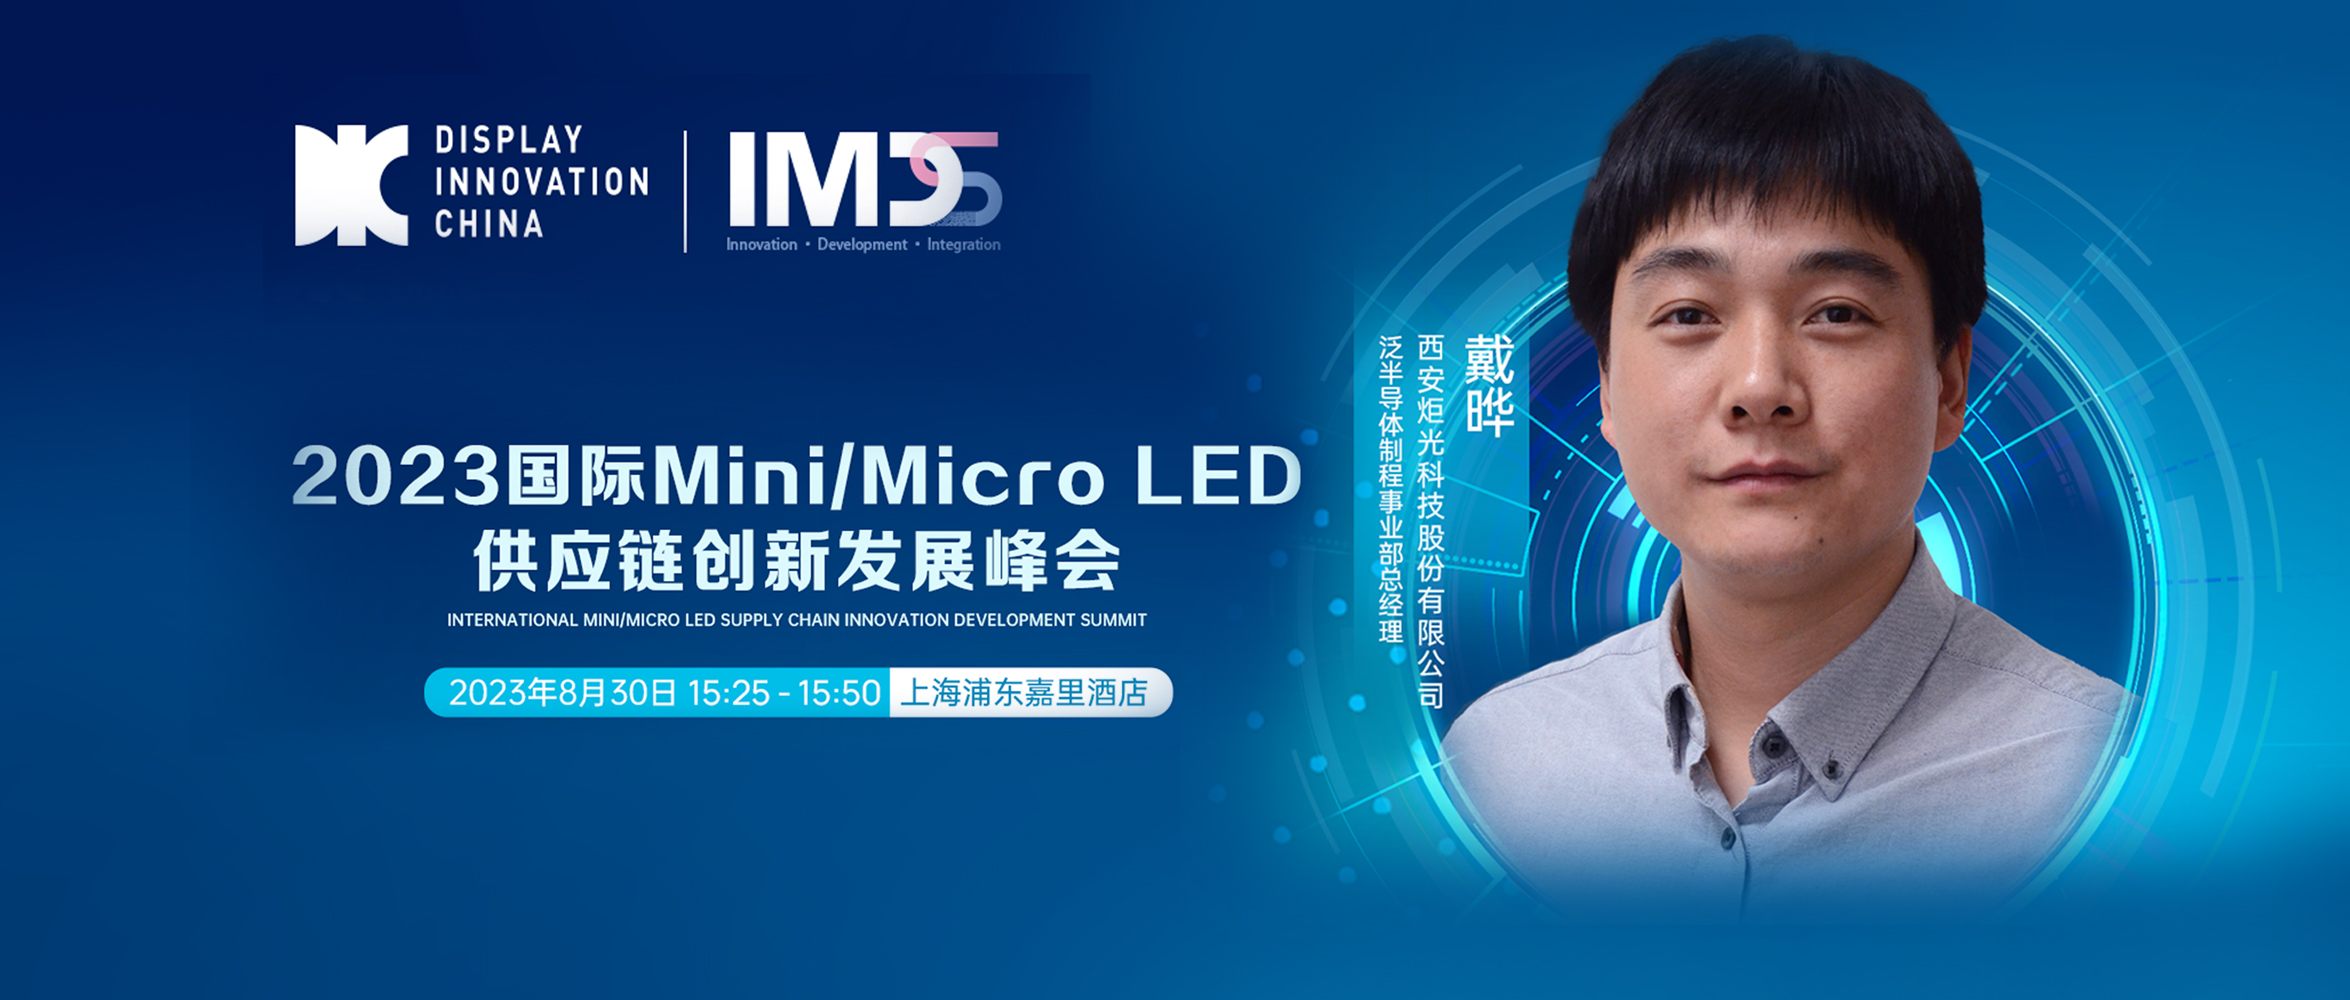 峰会报告 | 应用光子技术解决Mini 和 Micro LED制程工艺技术难题